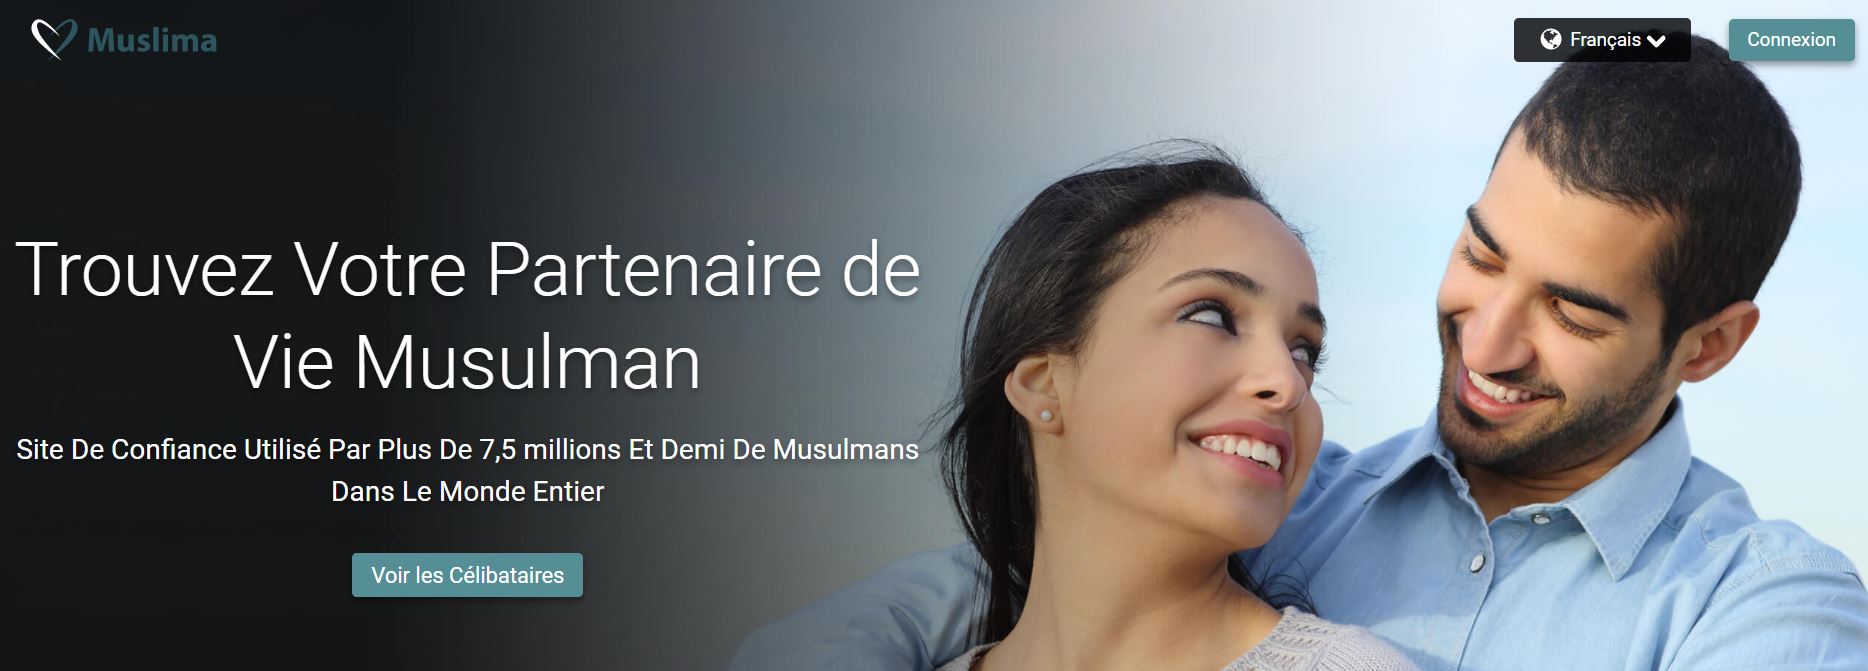 Rencontre musulman gratuit entre célibataires - fad-formation.fr